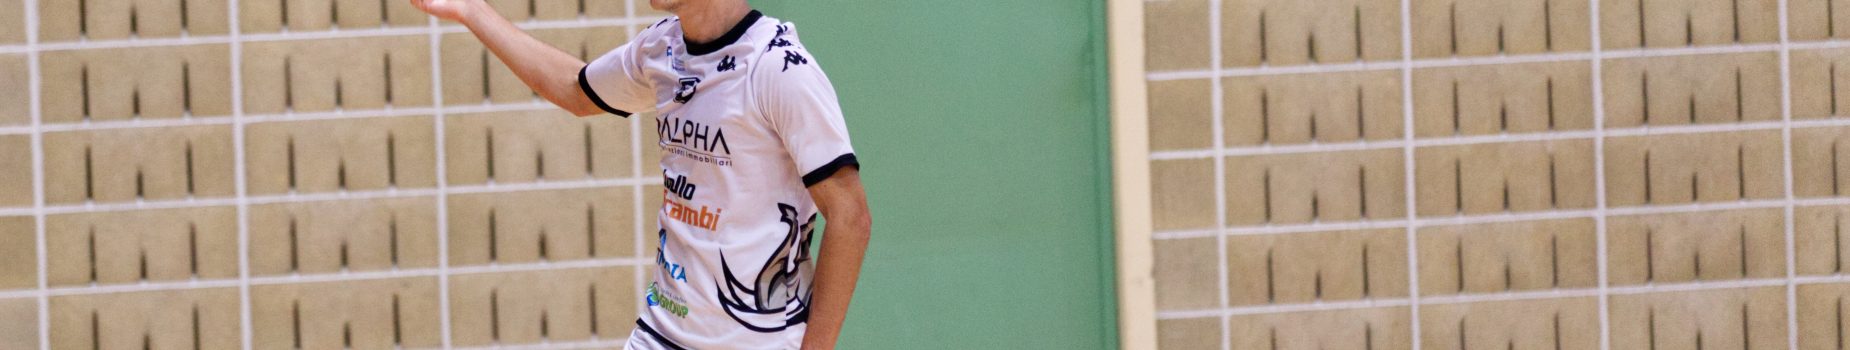 Gonzalo Pires lascia la Futsal Cesena